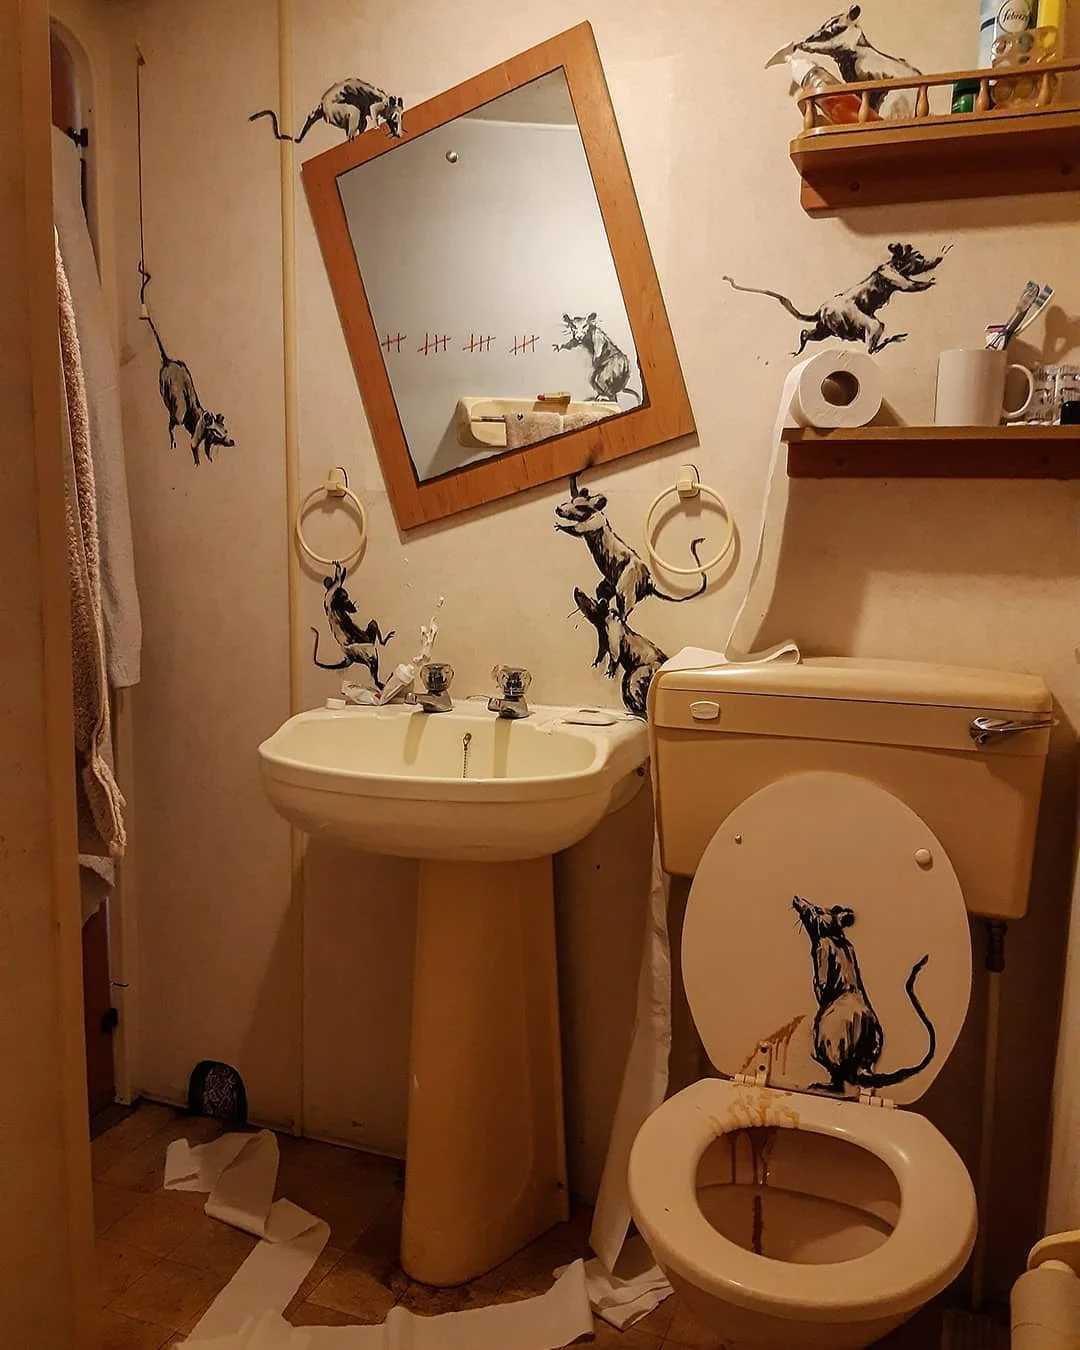 Бенксі створив нову трешову інсталяцію у власному туалеті - фото 475366